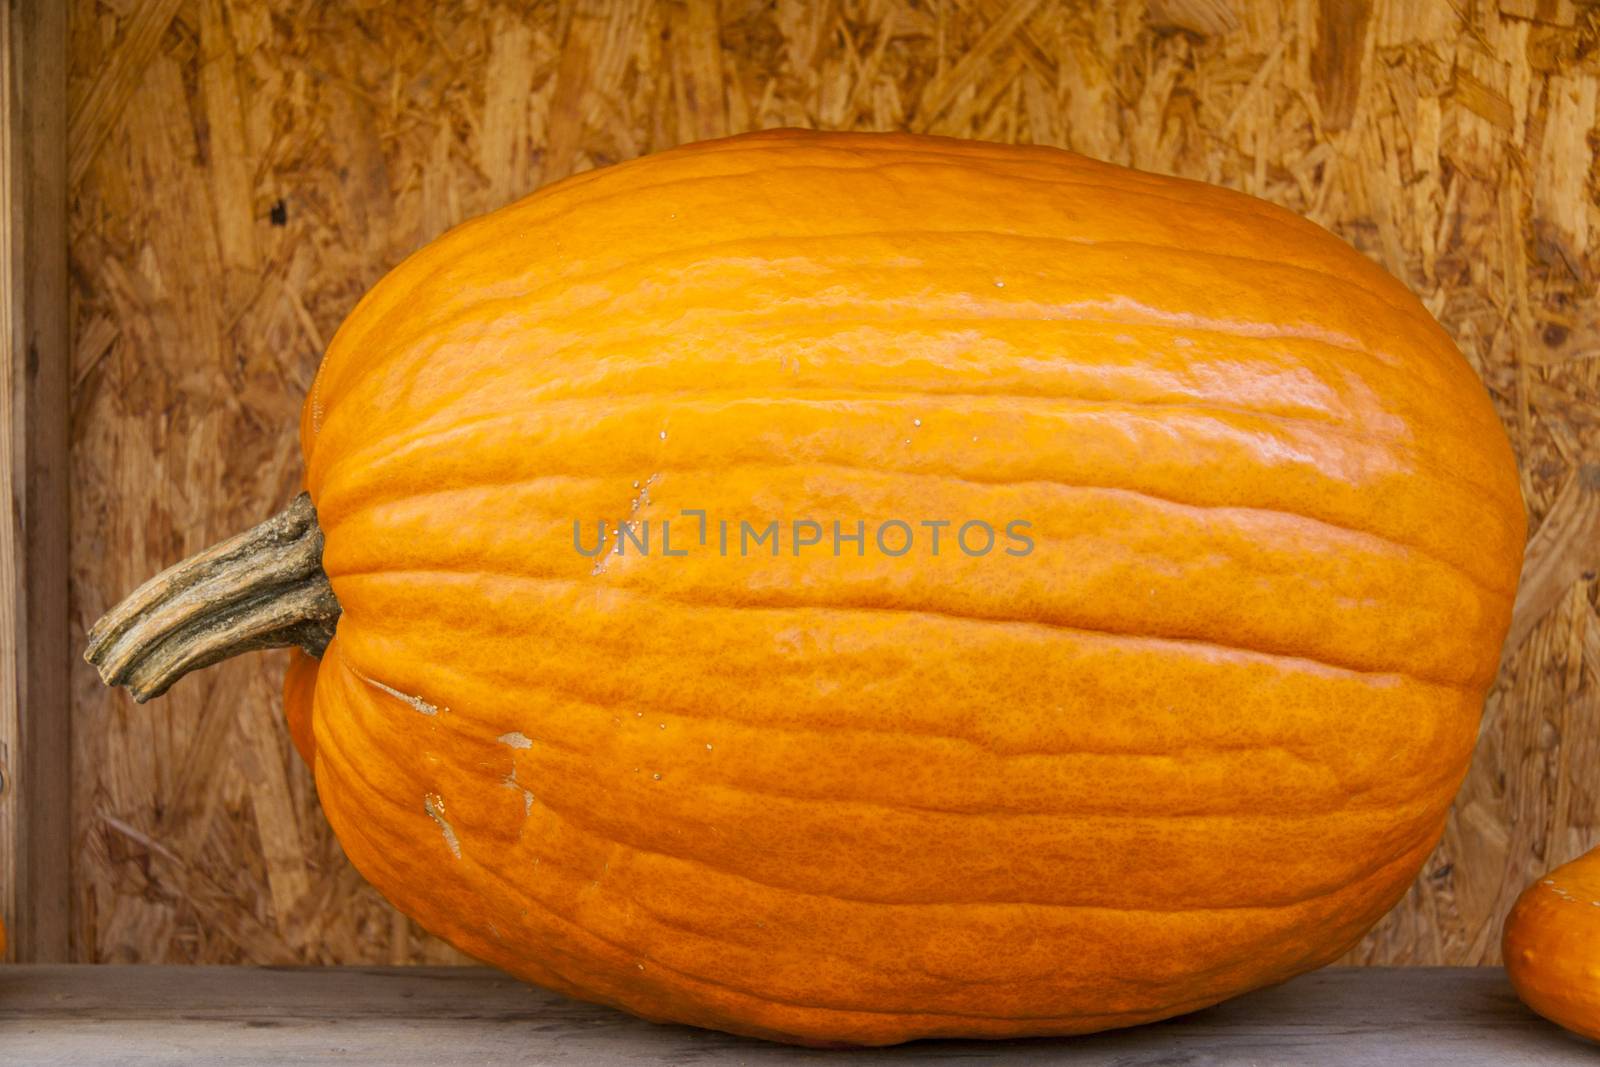 Halloween big Halloween cucurbita pumpkin pumpkins from autumn h by juniart